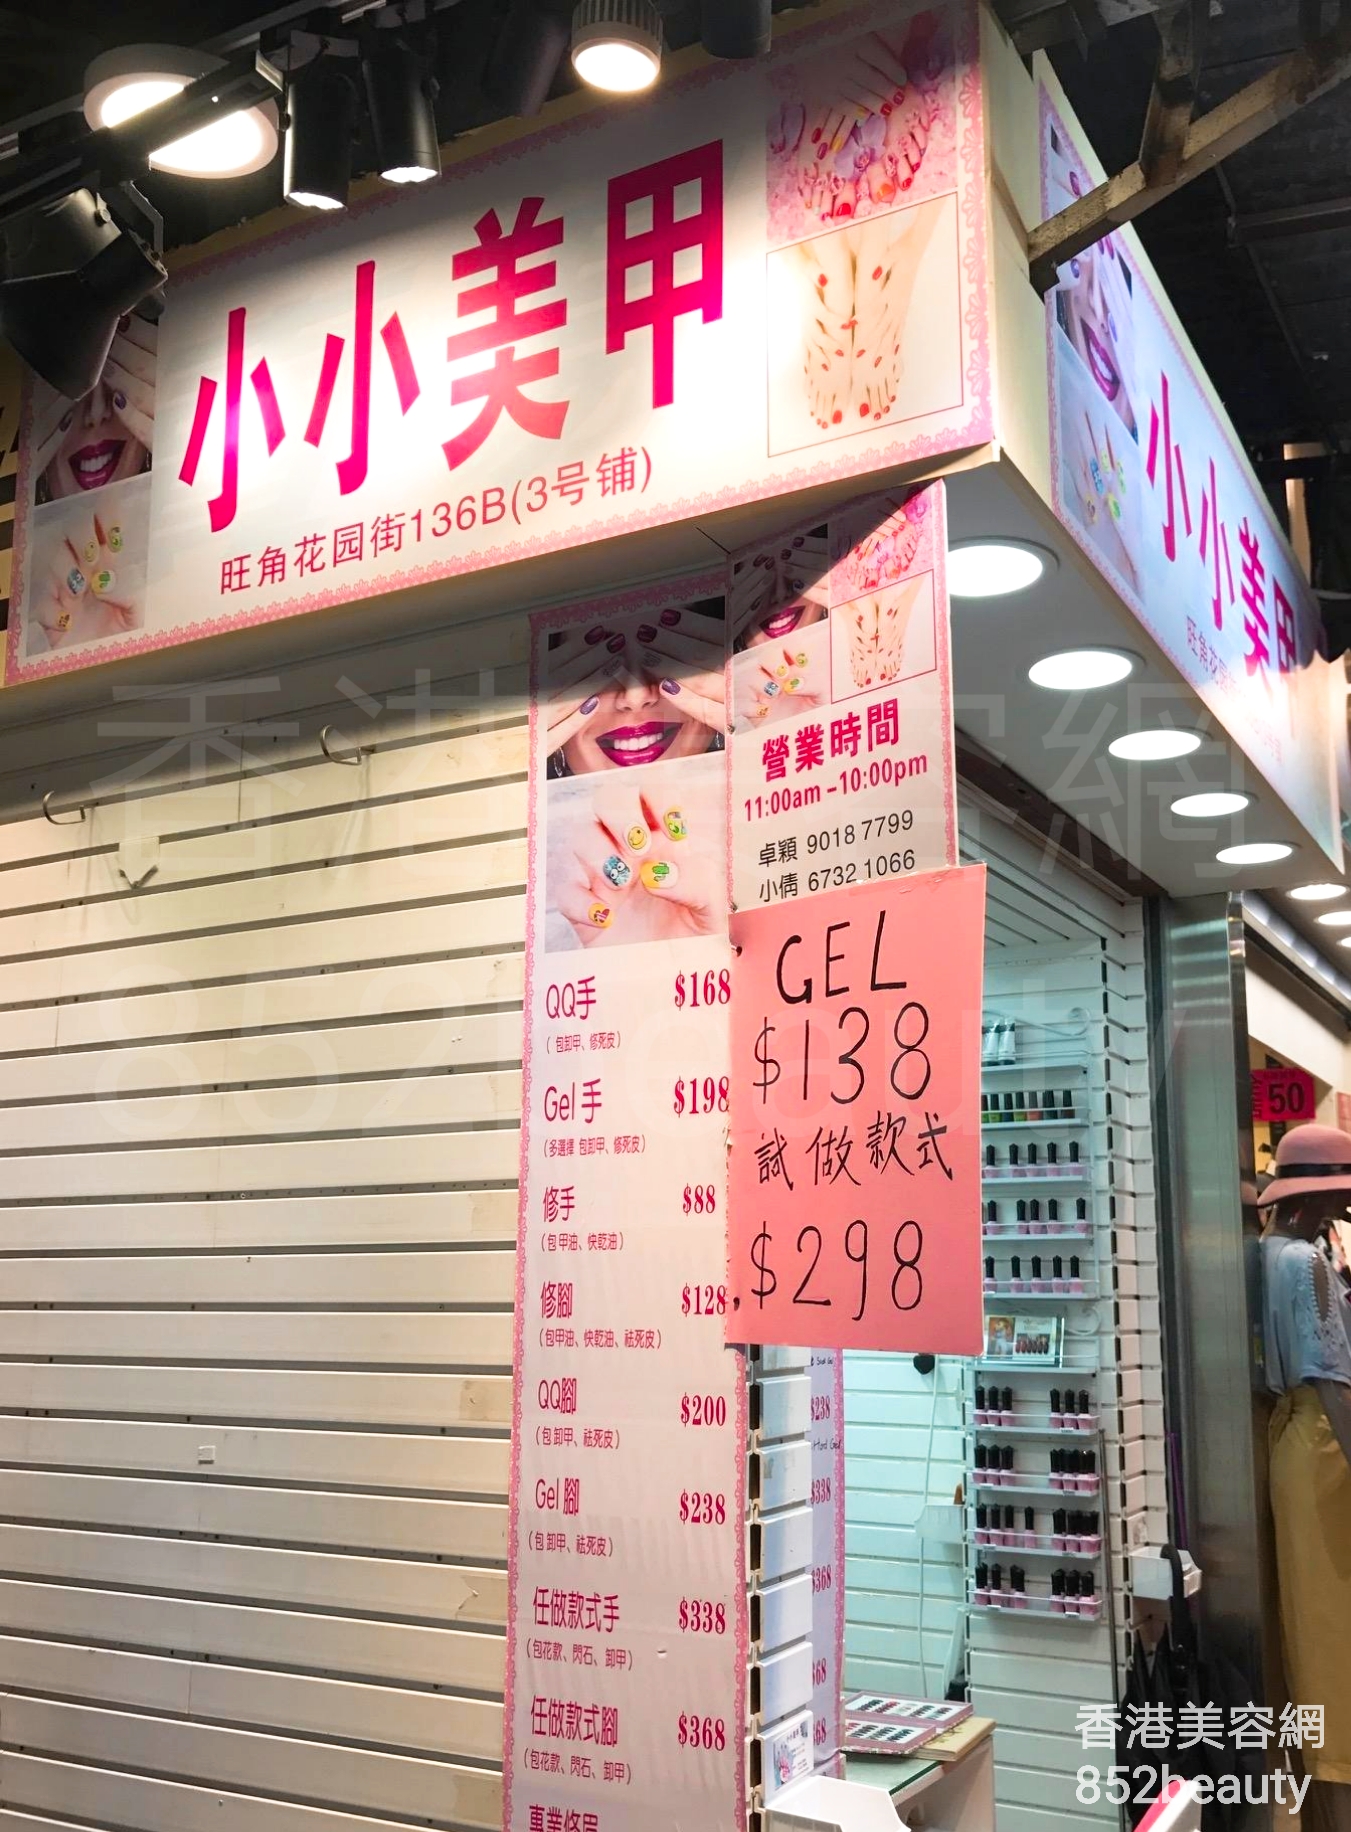 香港美容網 Hong Kong Beauty Salon 美容院 / 美容師: 小小美甲